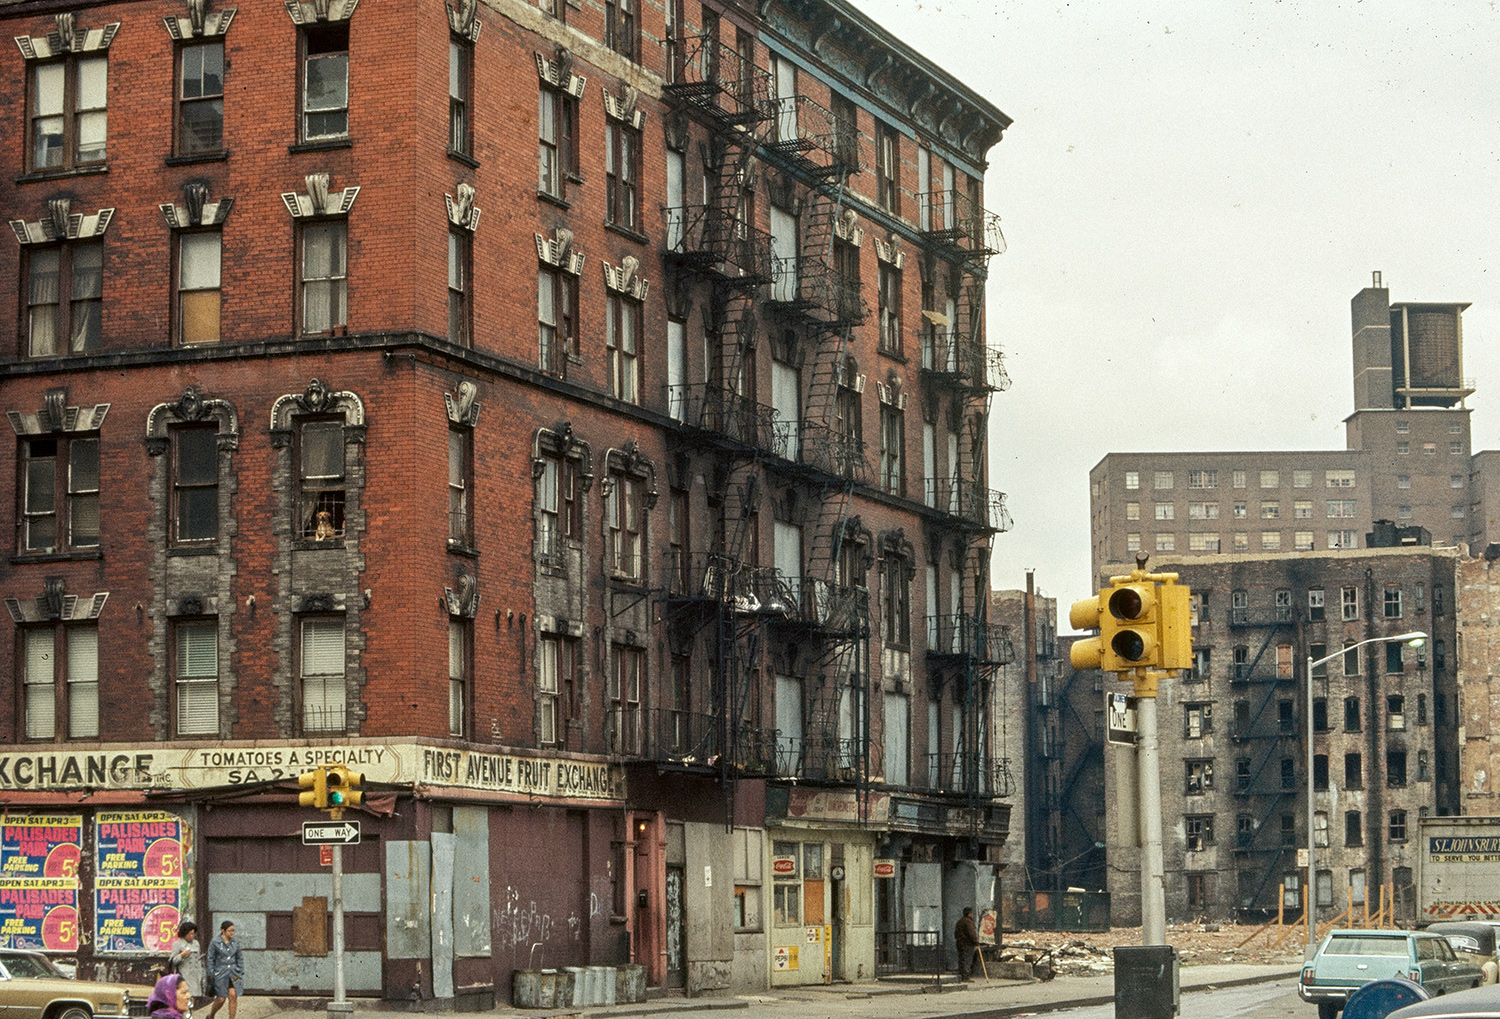 Vista de la esquina de un edificio de seis pisos con sus escaparates tapiados, en la ciudad de Nueva York.